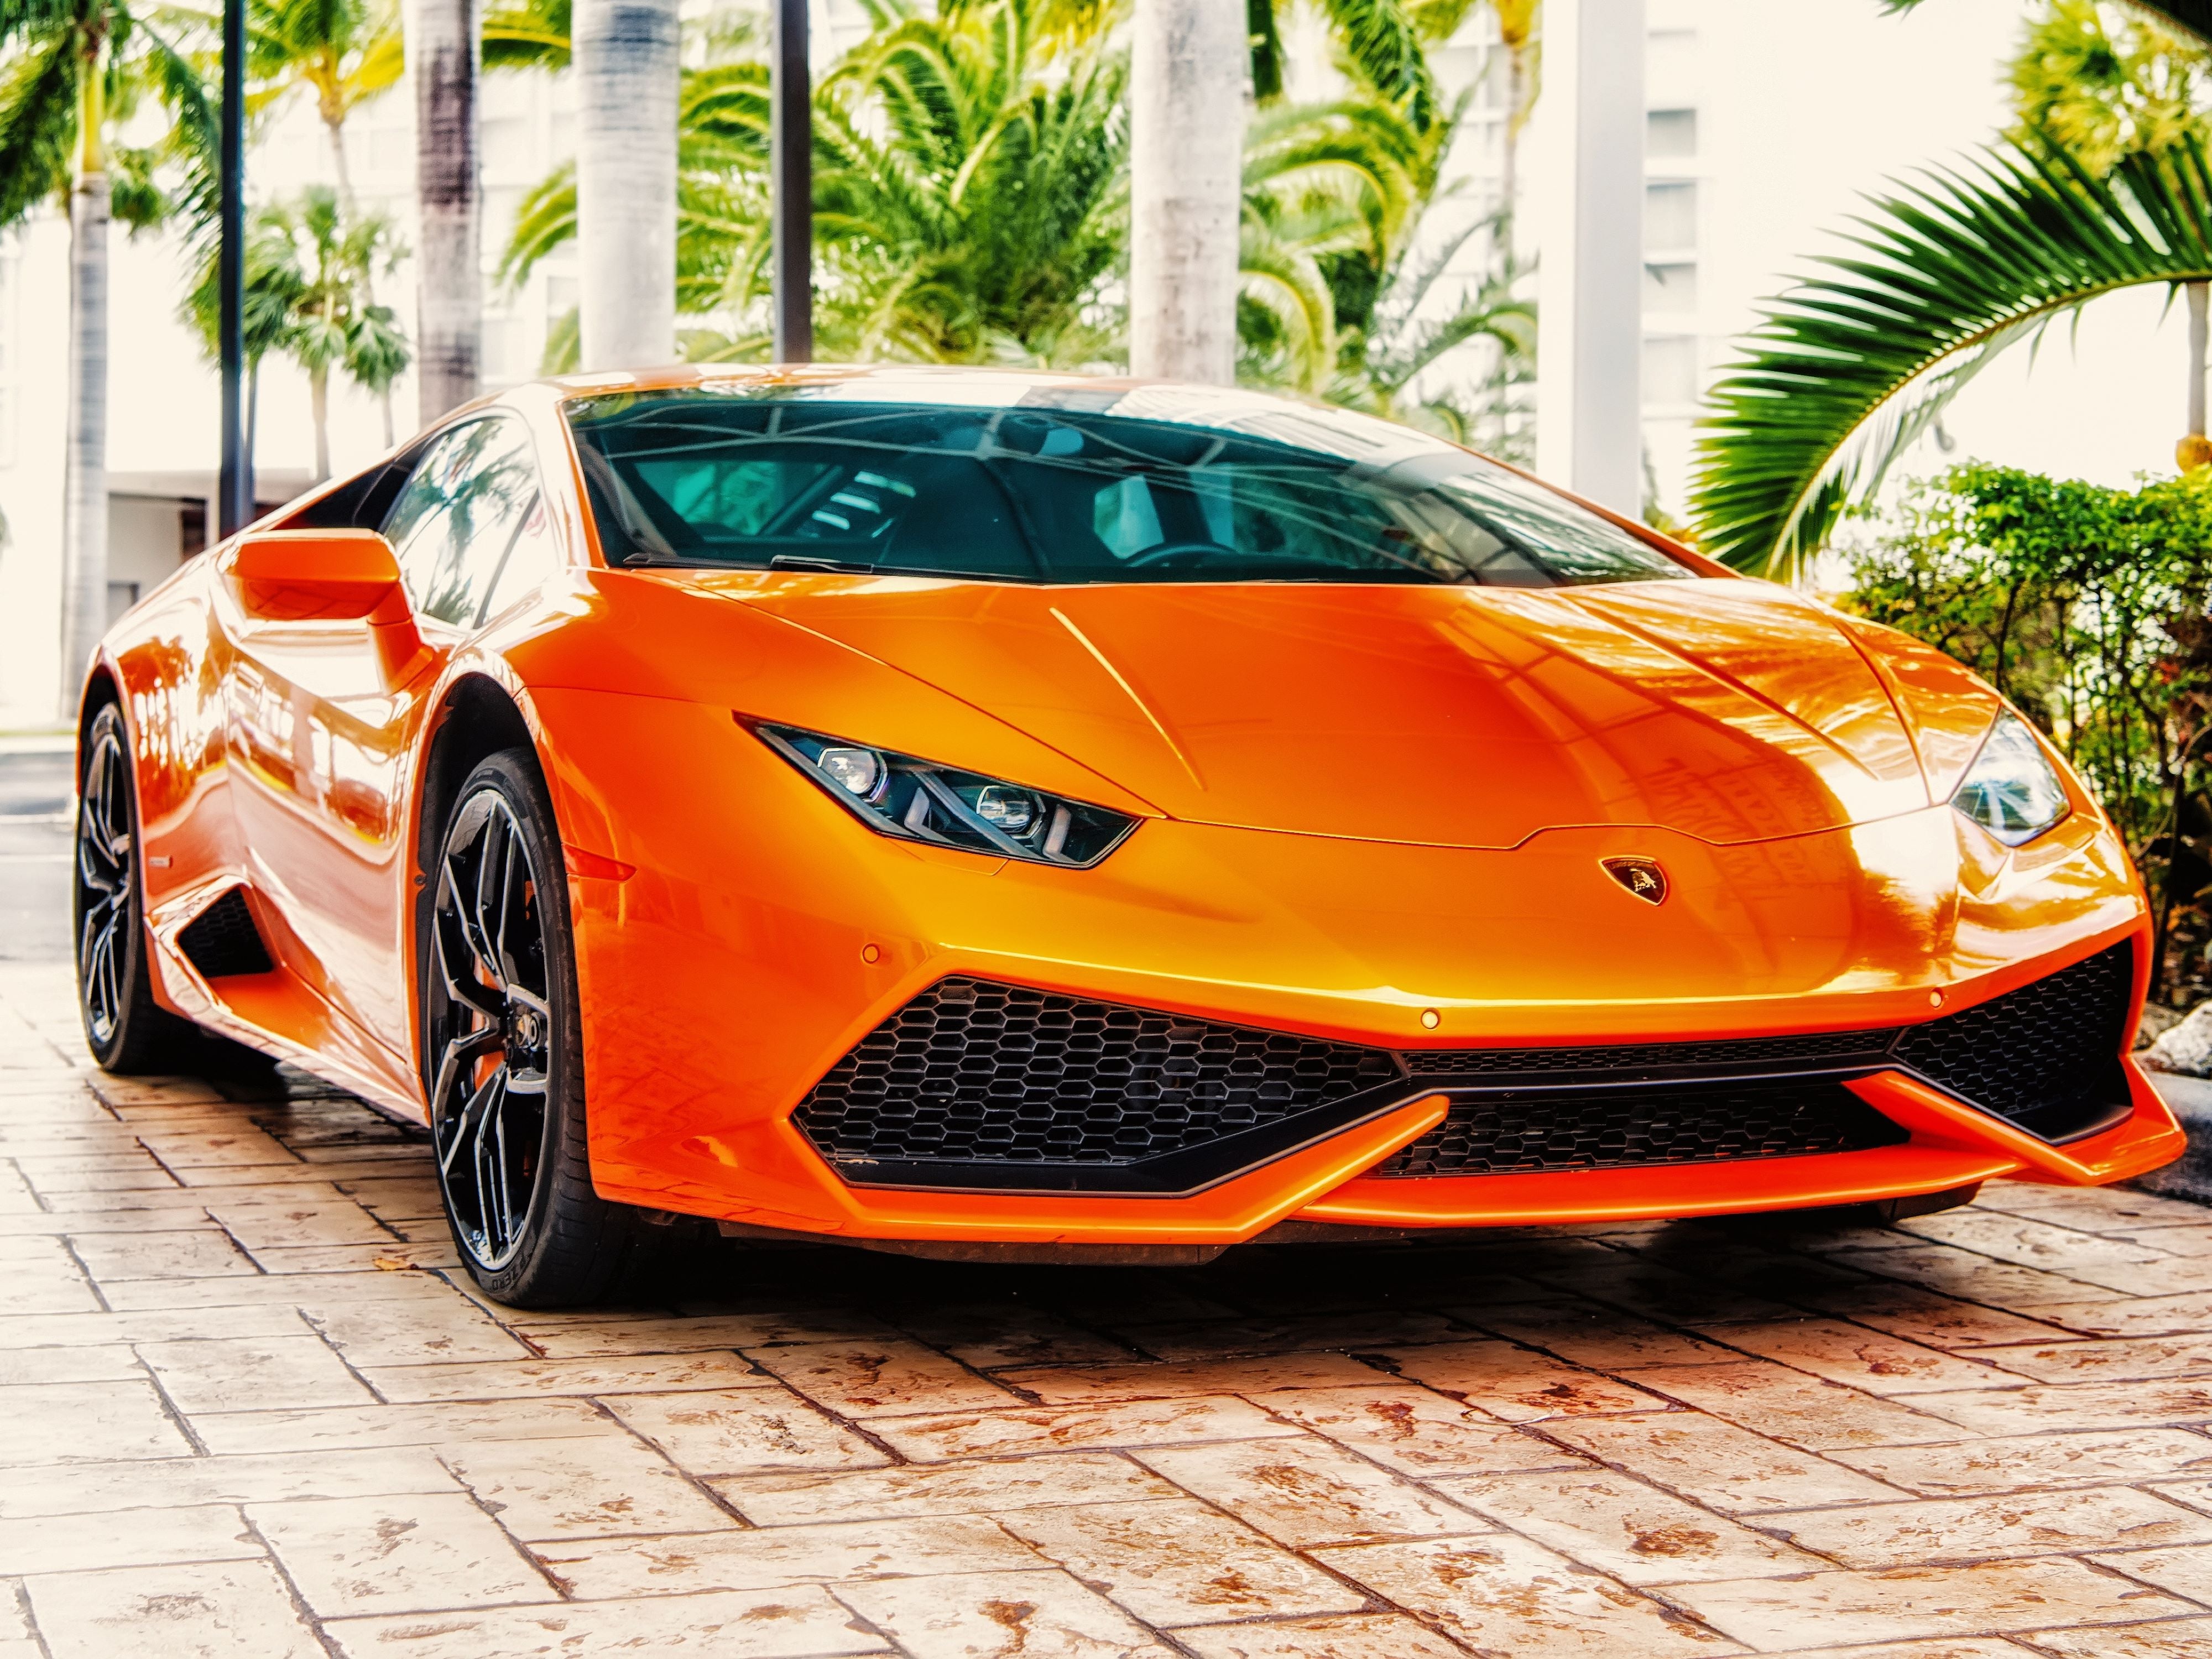 Voiture Lamborghini Orange